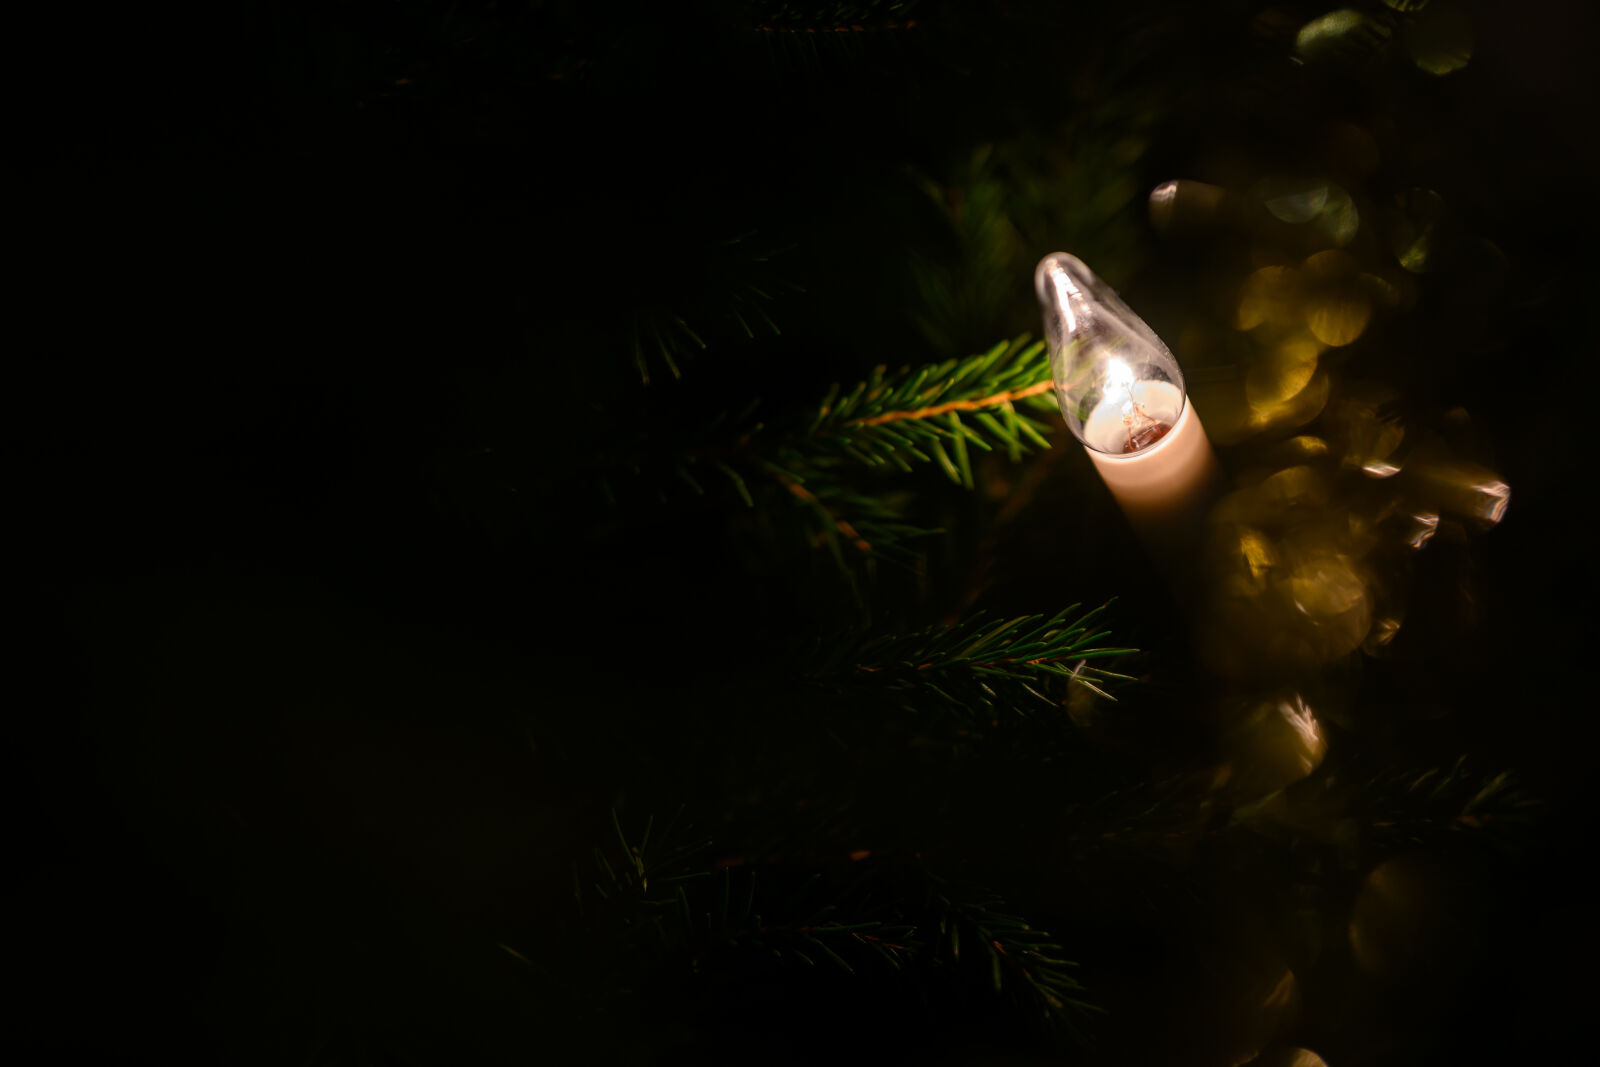 Nikon Z9 sample photo. Christmas light photography